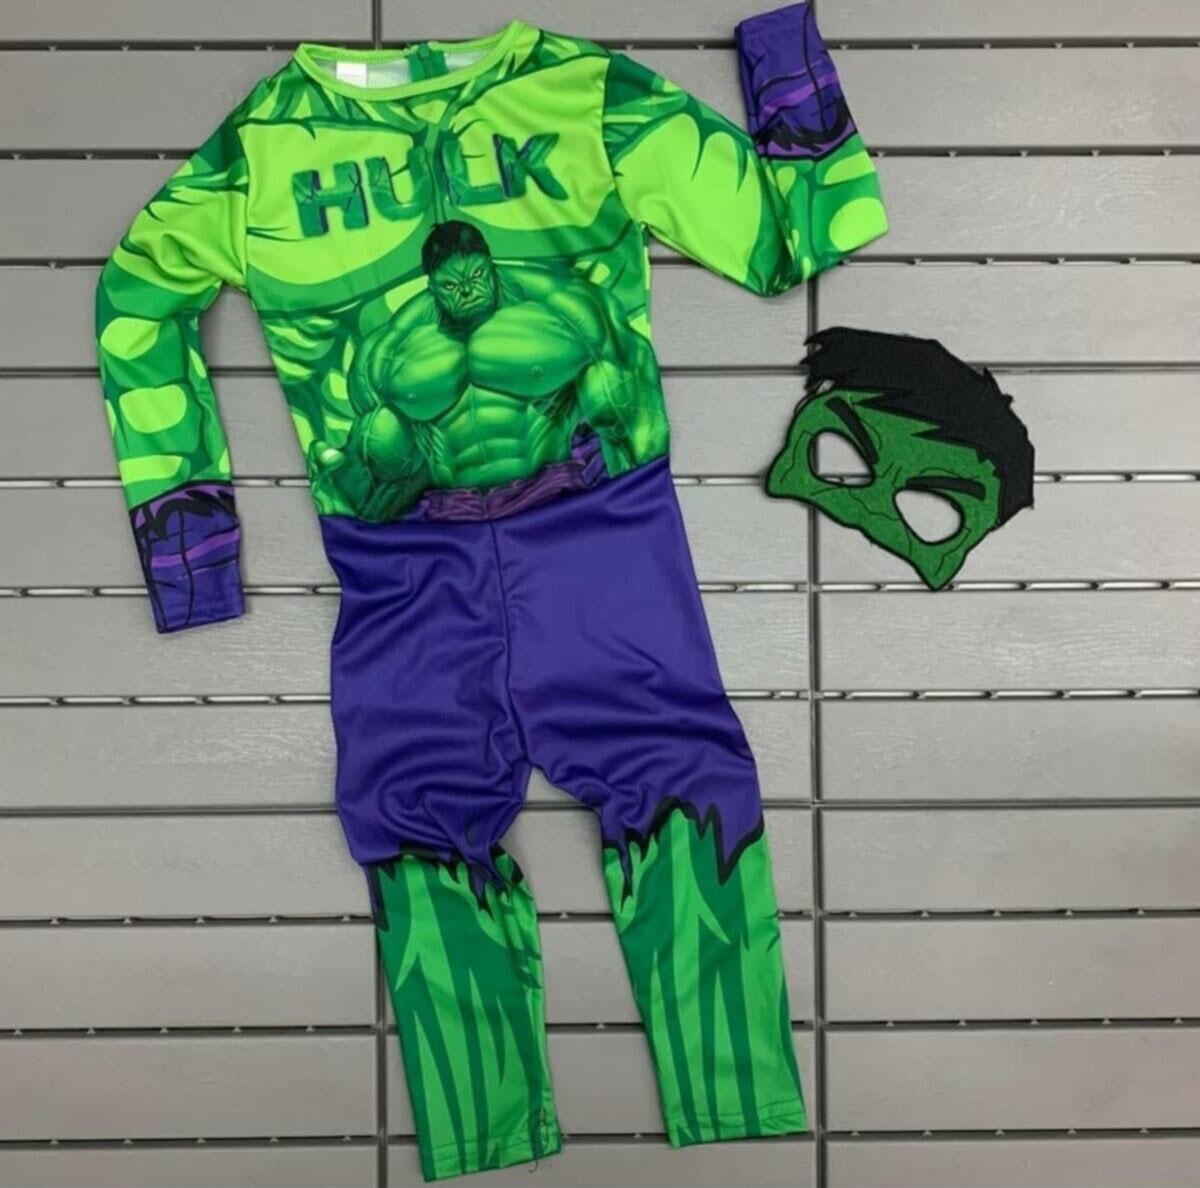 Yeşil Maskeli Baskılı Hulk Kostümü Çocuk Boy - Yeşil Dev Kostümü 5-6 Yaş  (CLZ)